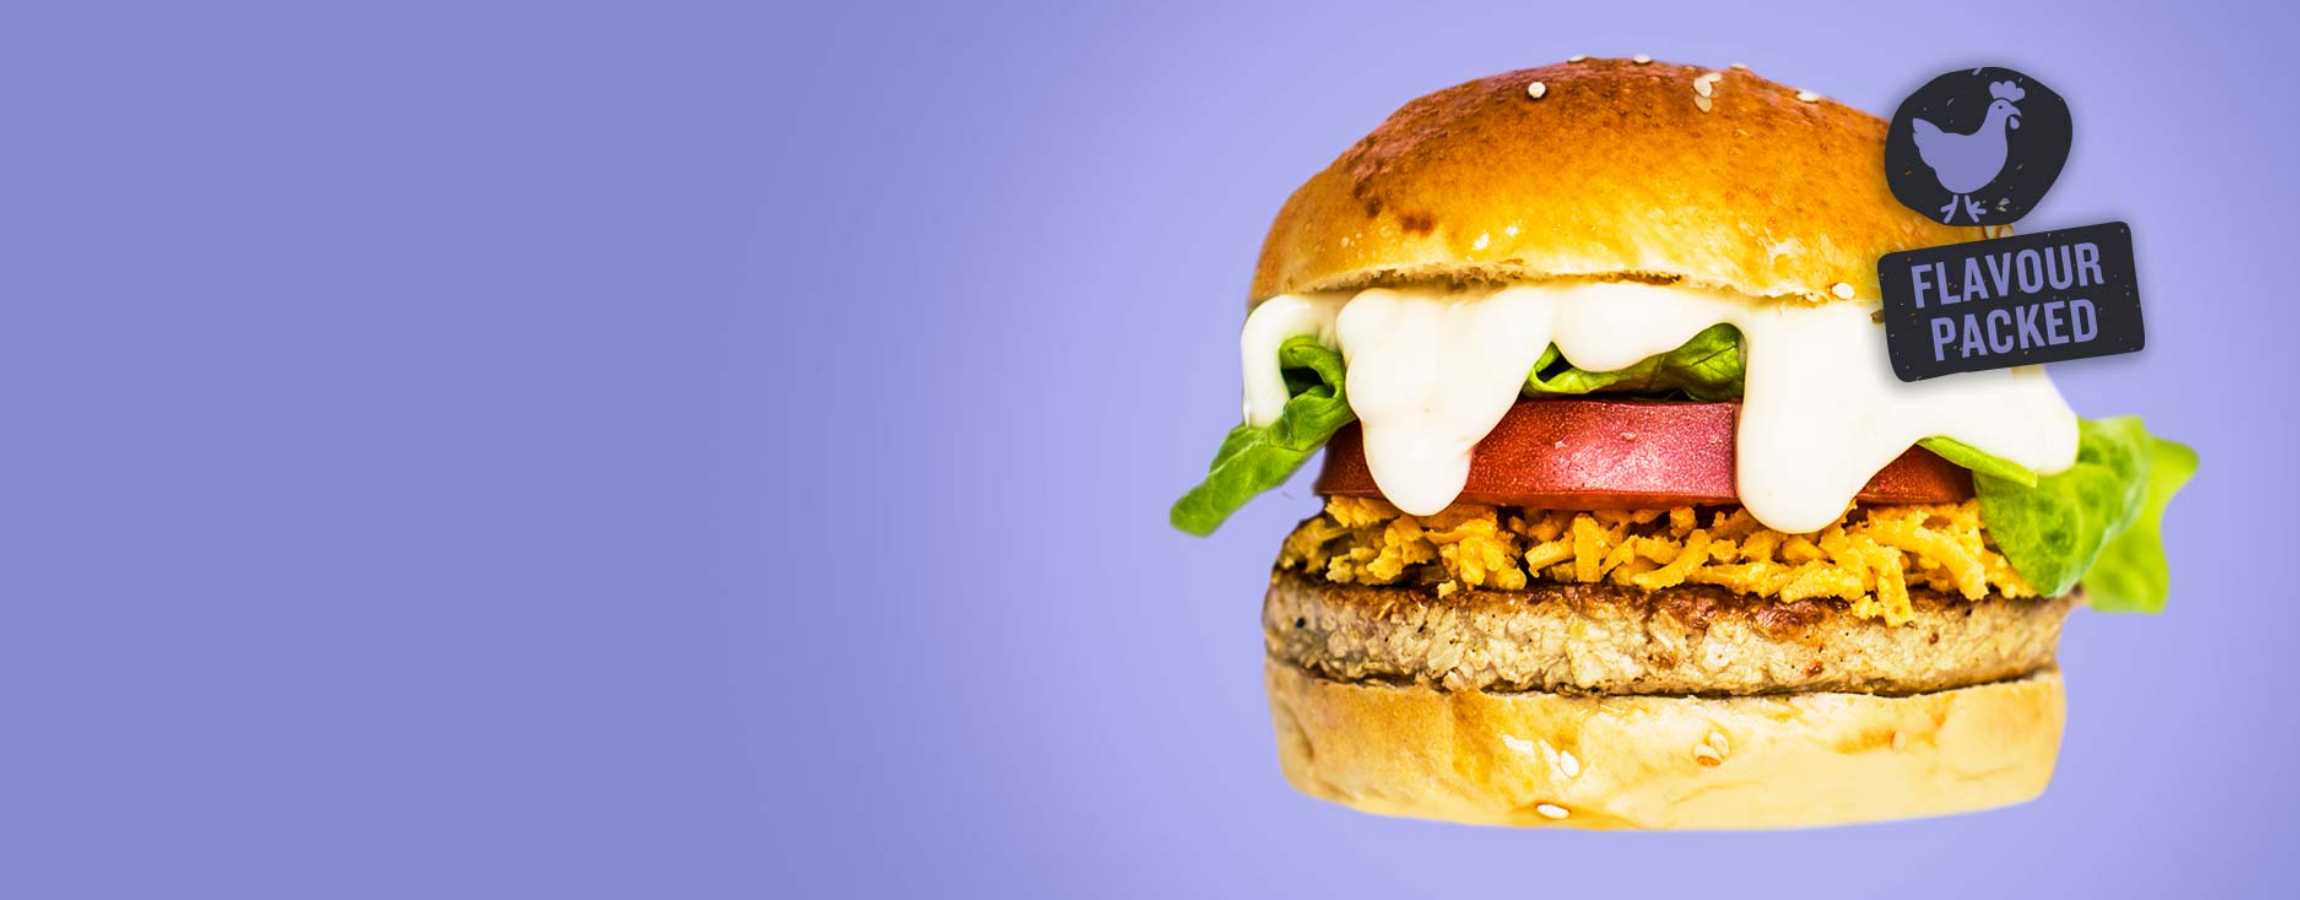 veef chicken burger purple banner design